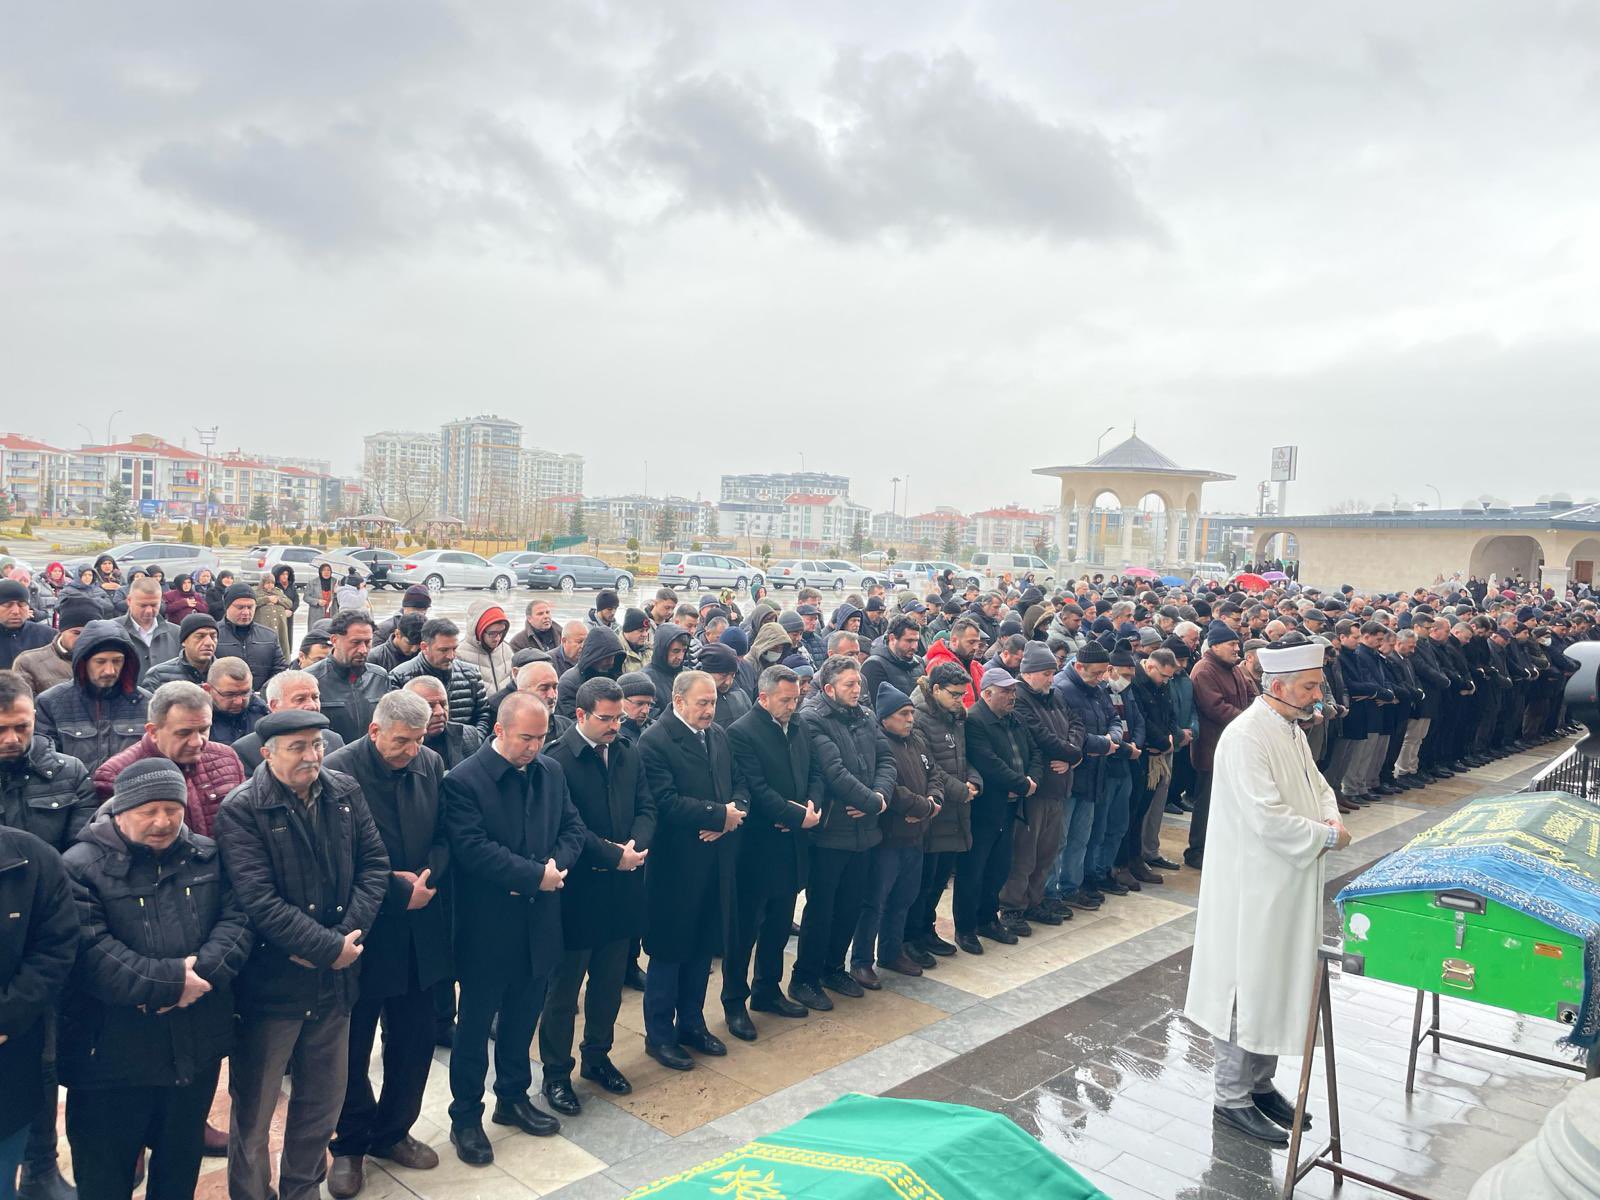 Afyonkarahisar Kaymakamı Harun Reşit HAN, Kıvanç Kilci'nin cenaze törenindeydi.